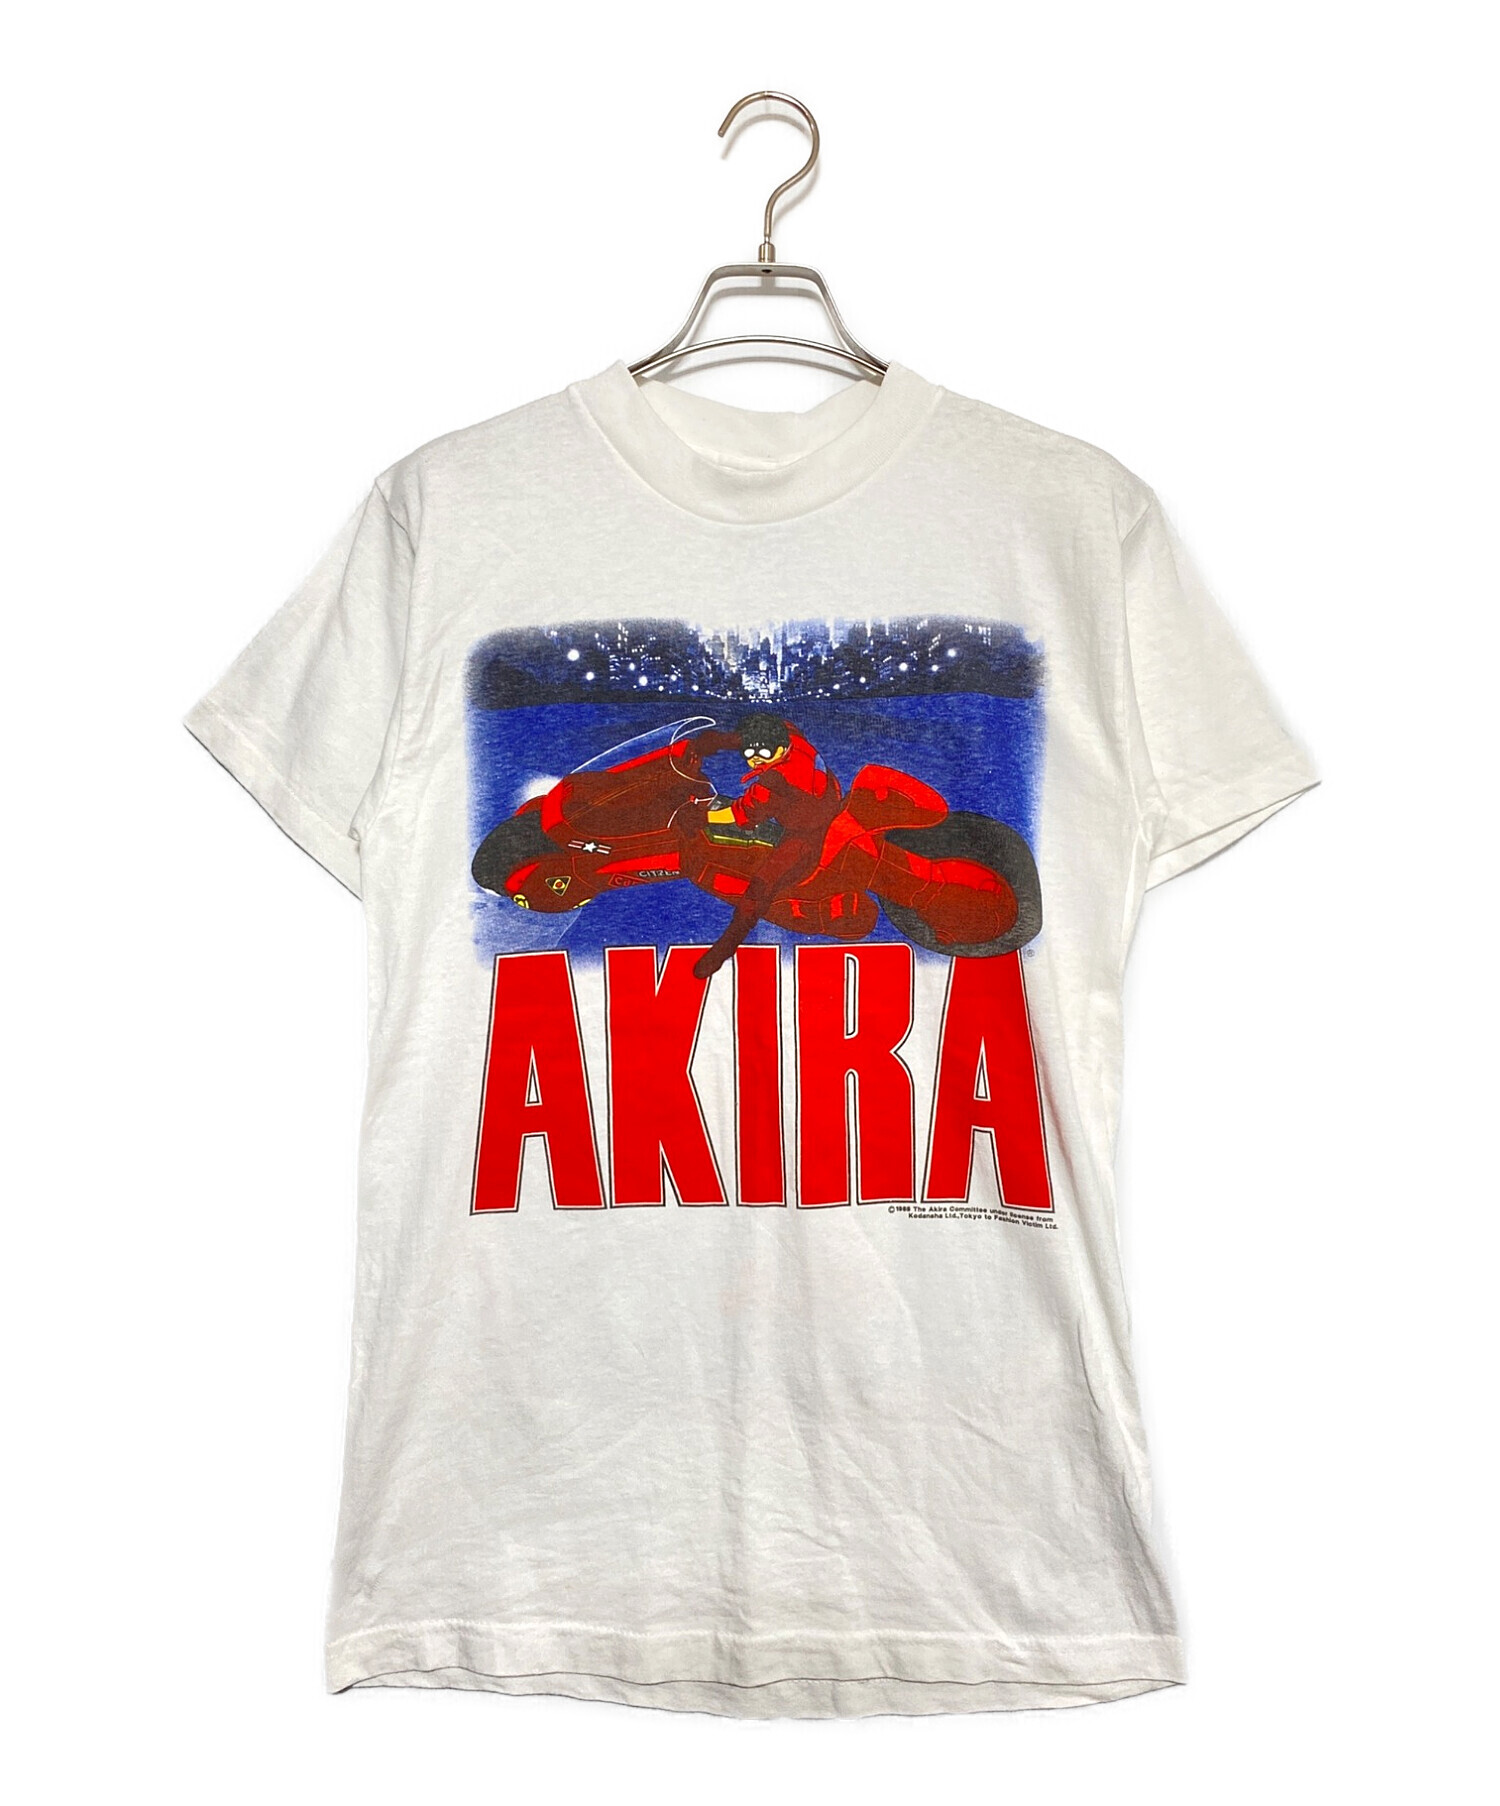 【ビンテージ】AKIRA Tシャツ【希少】